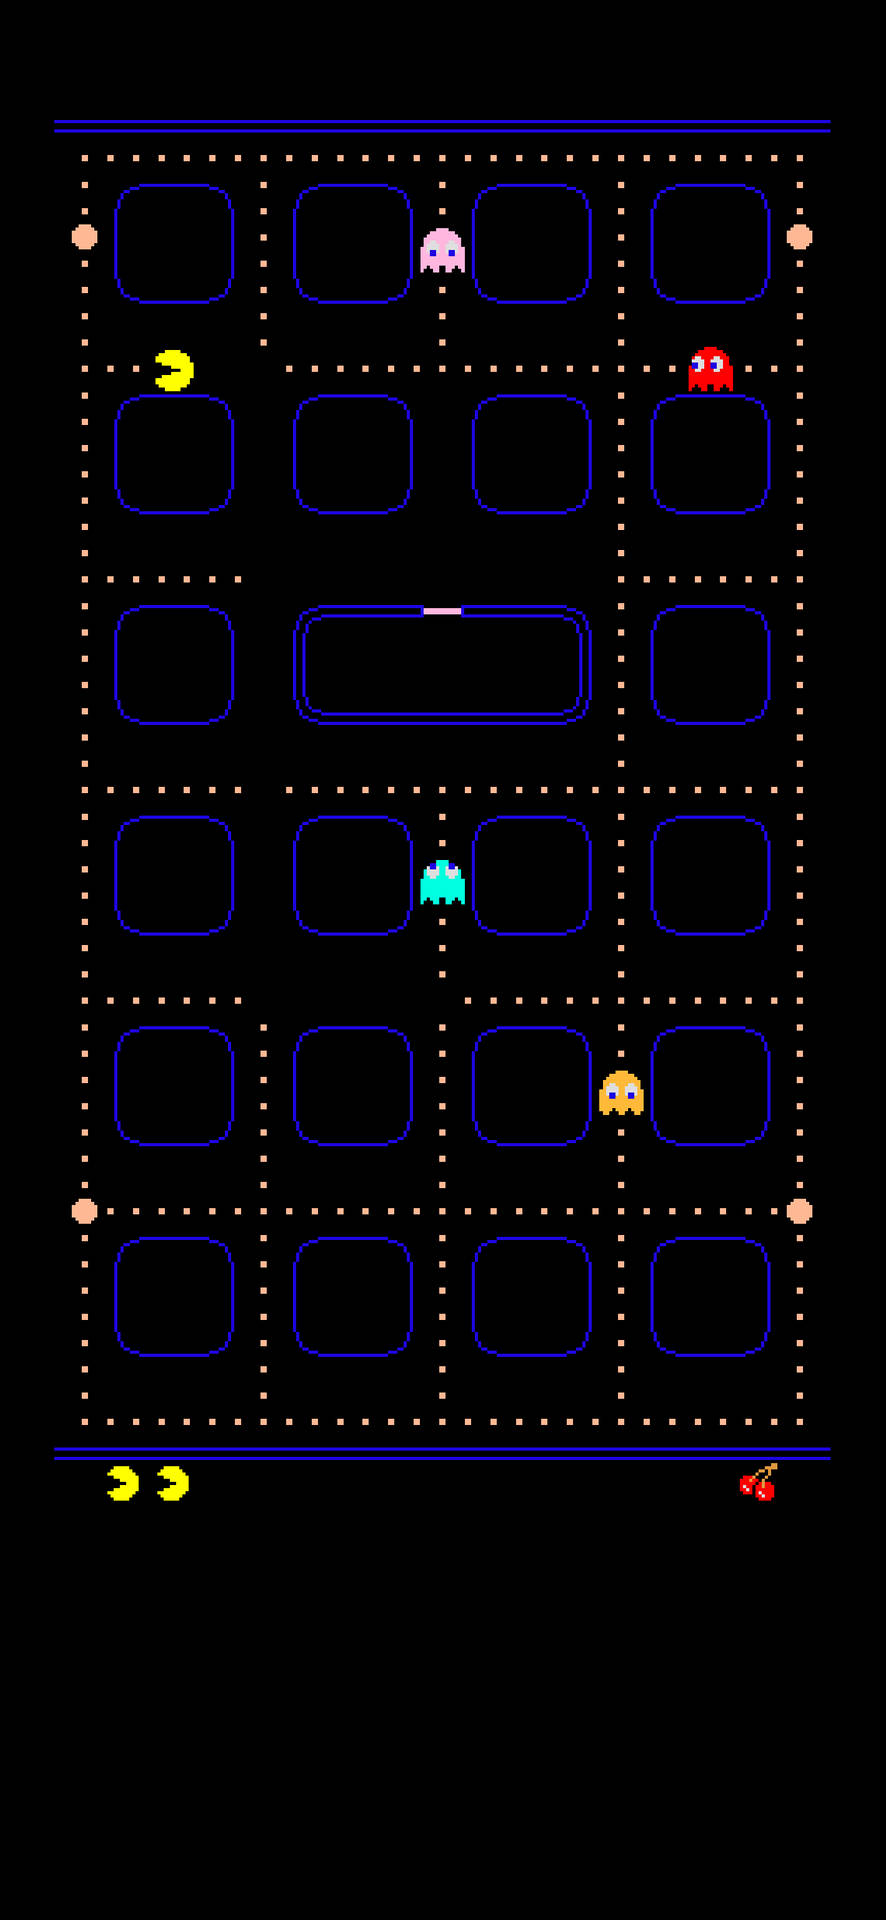 Capturade Pantalla Del Videojuego De Pac-man Arcade Fondo de pantalla